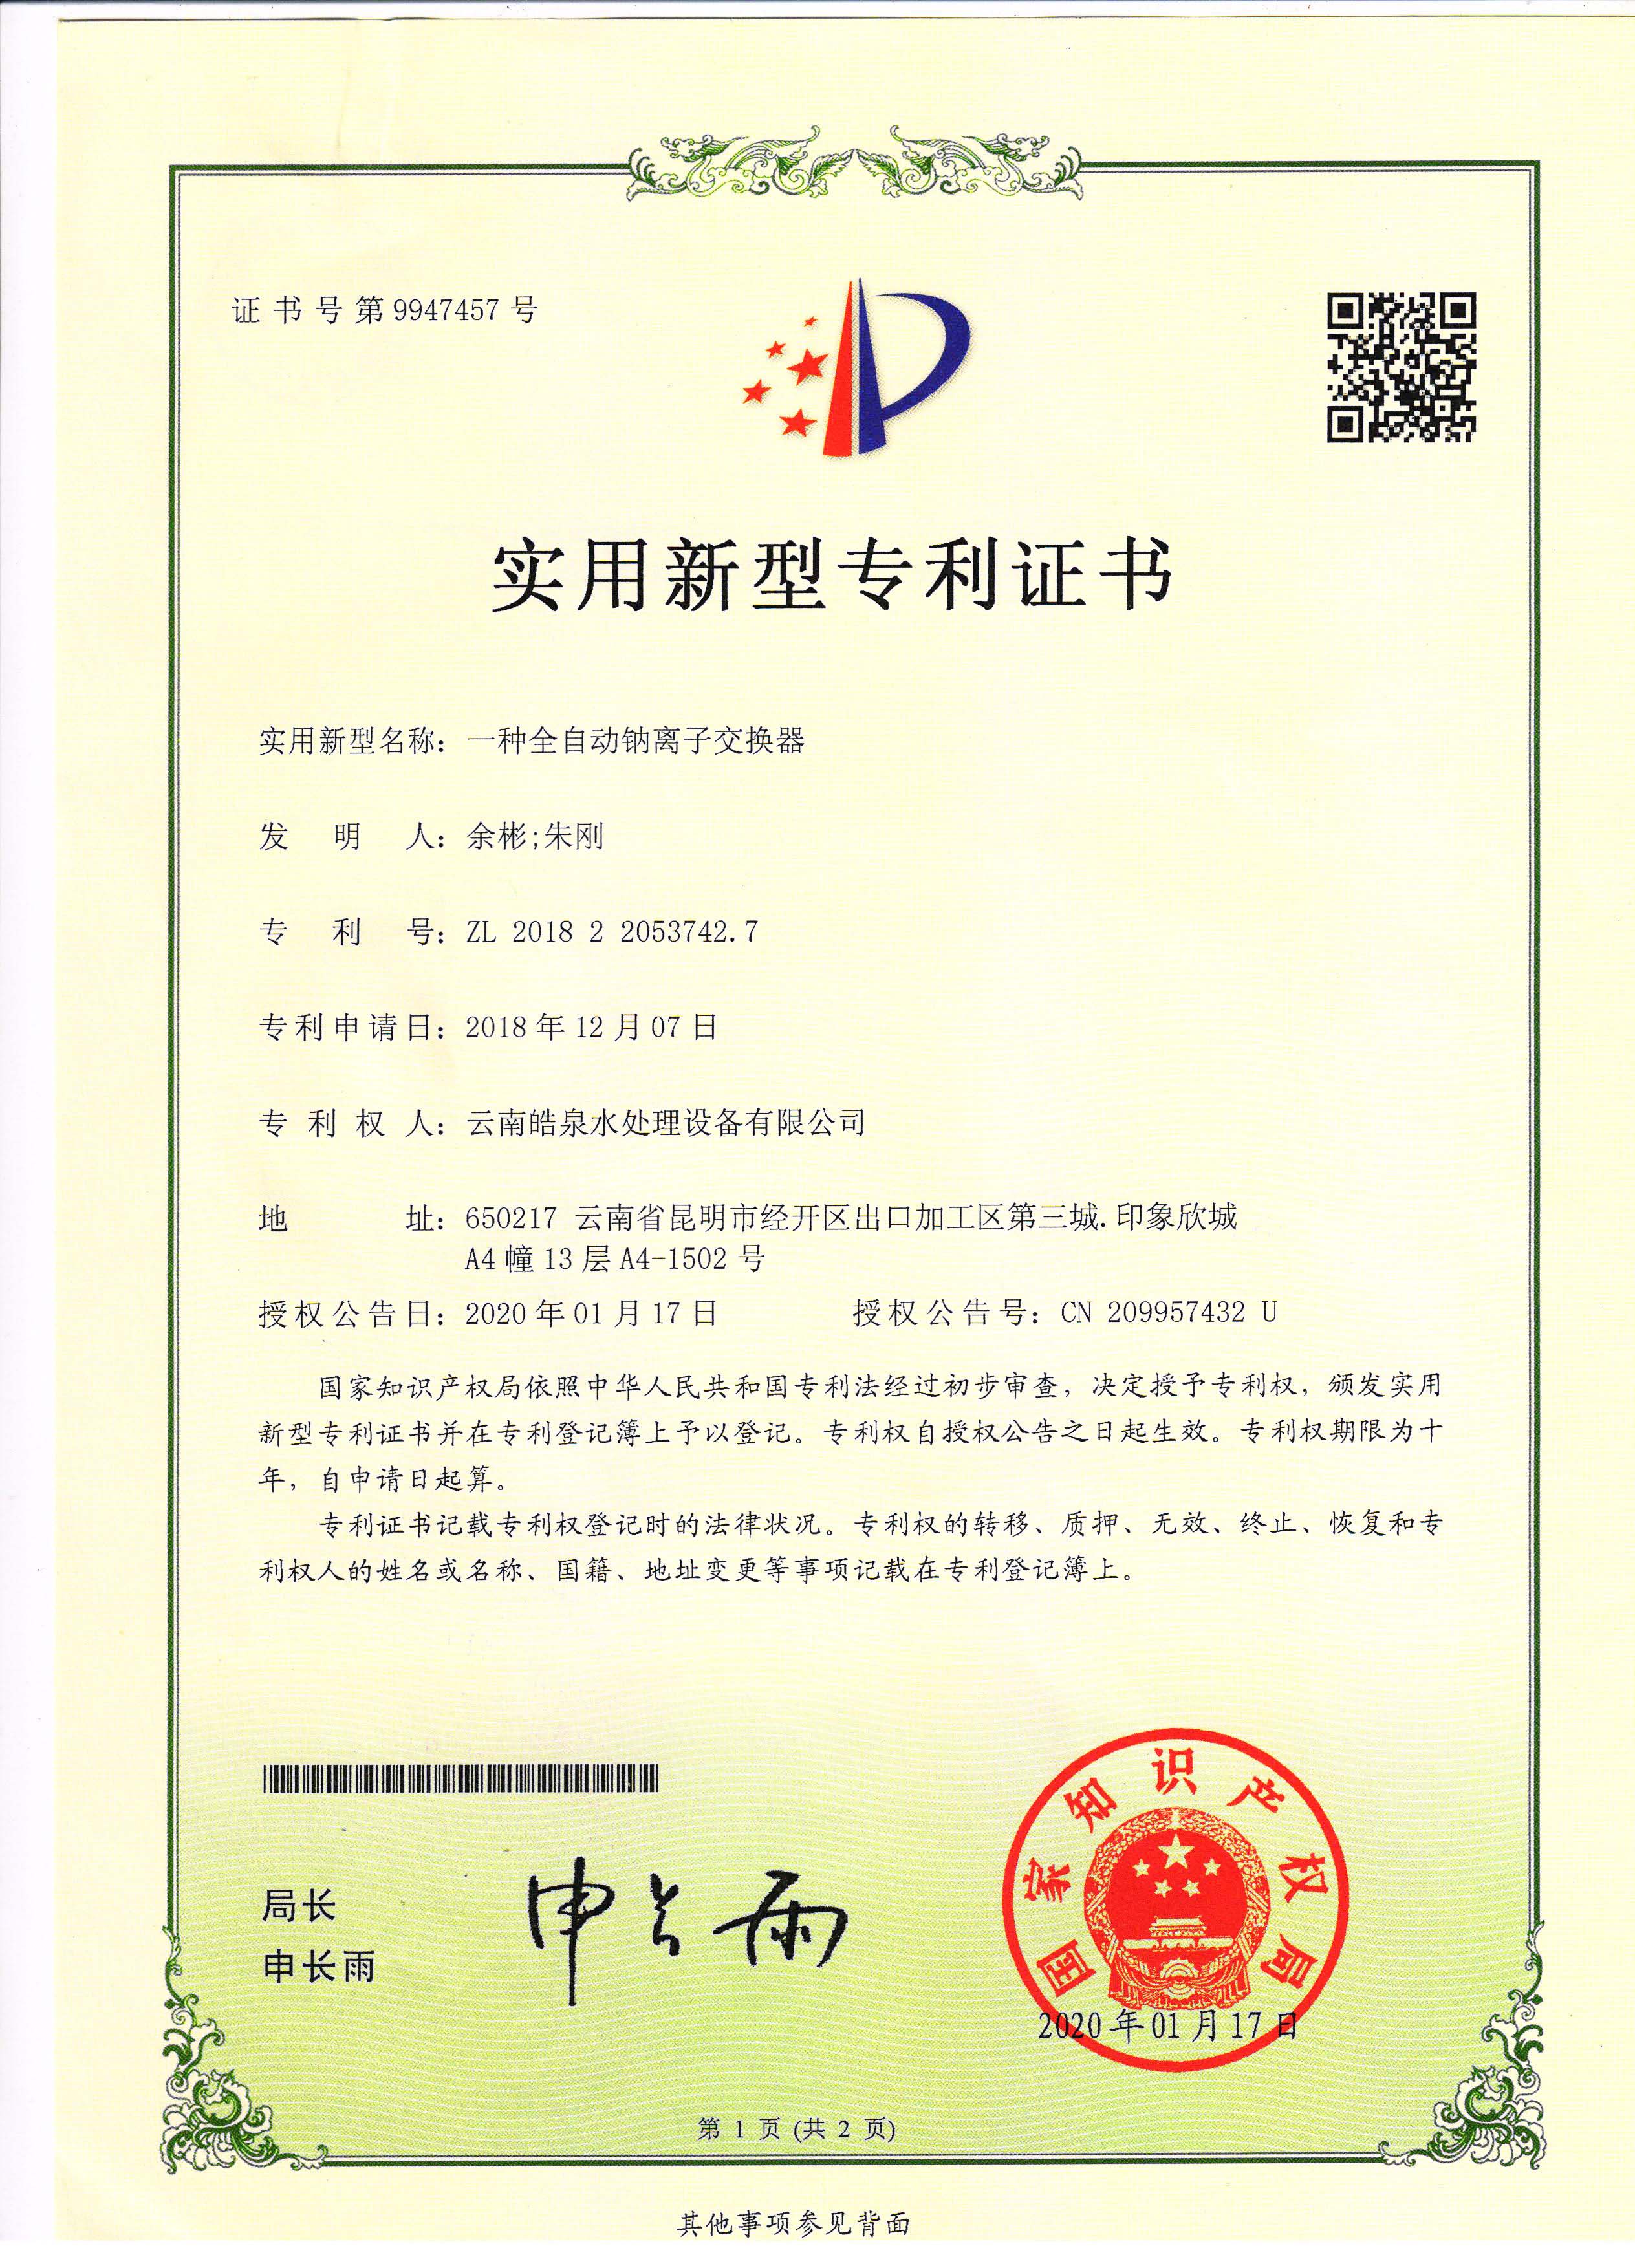 自动钠离子交换器专利技术证